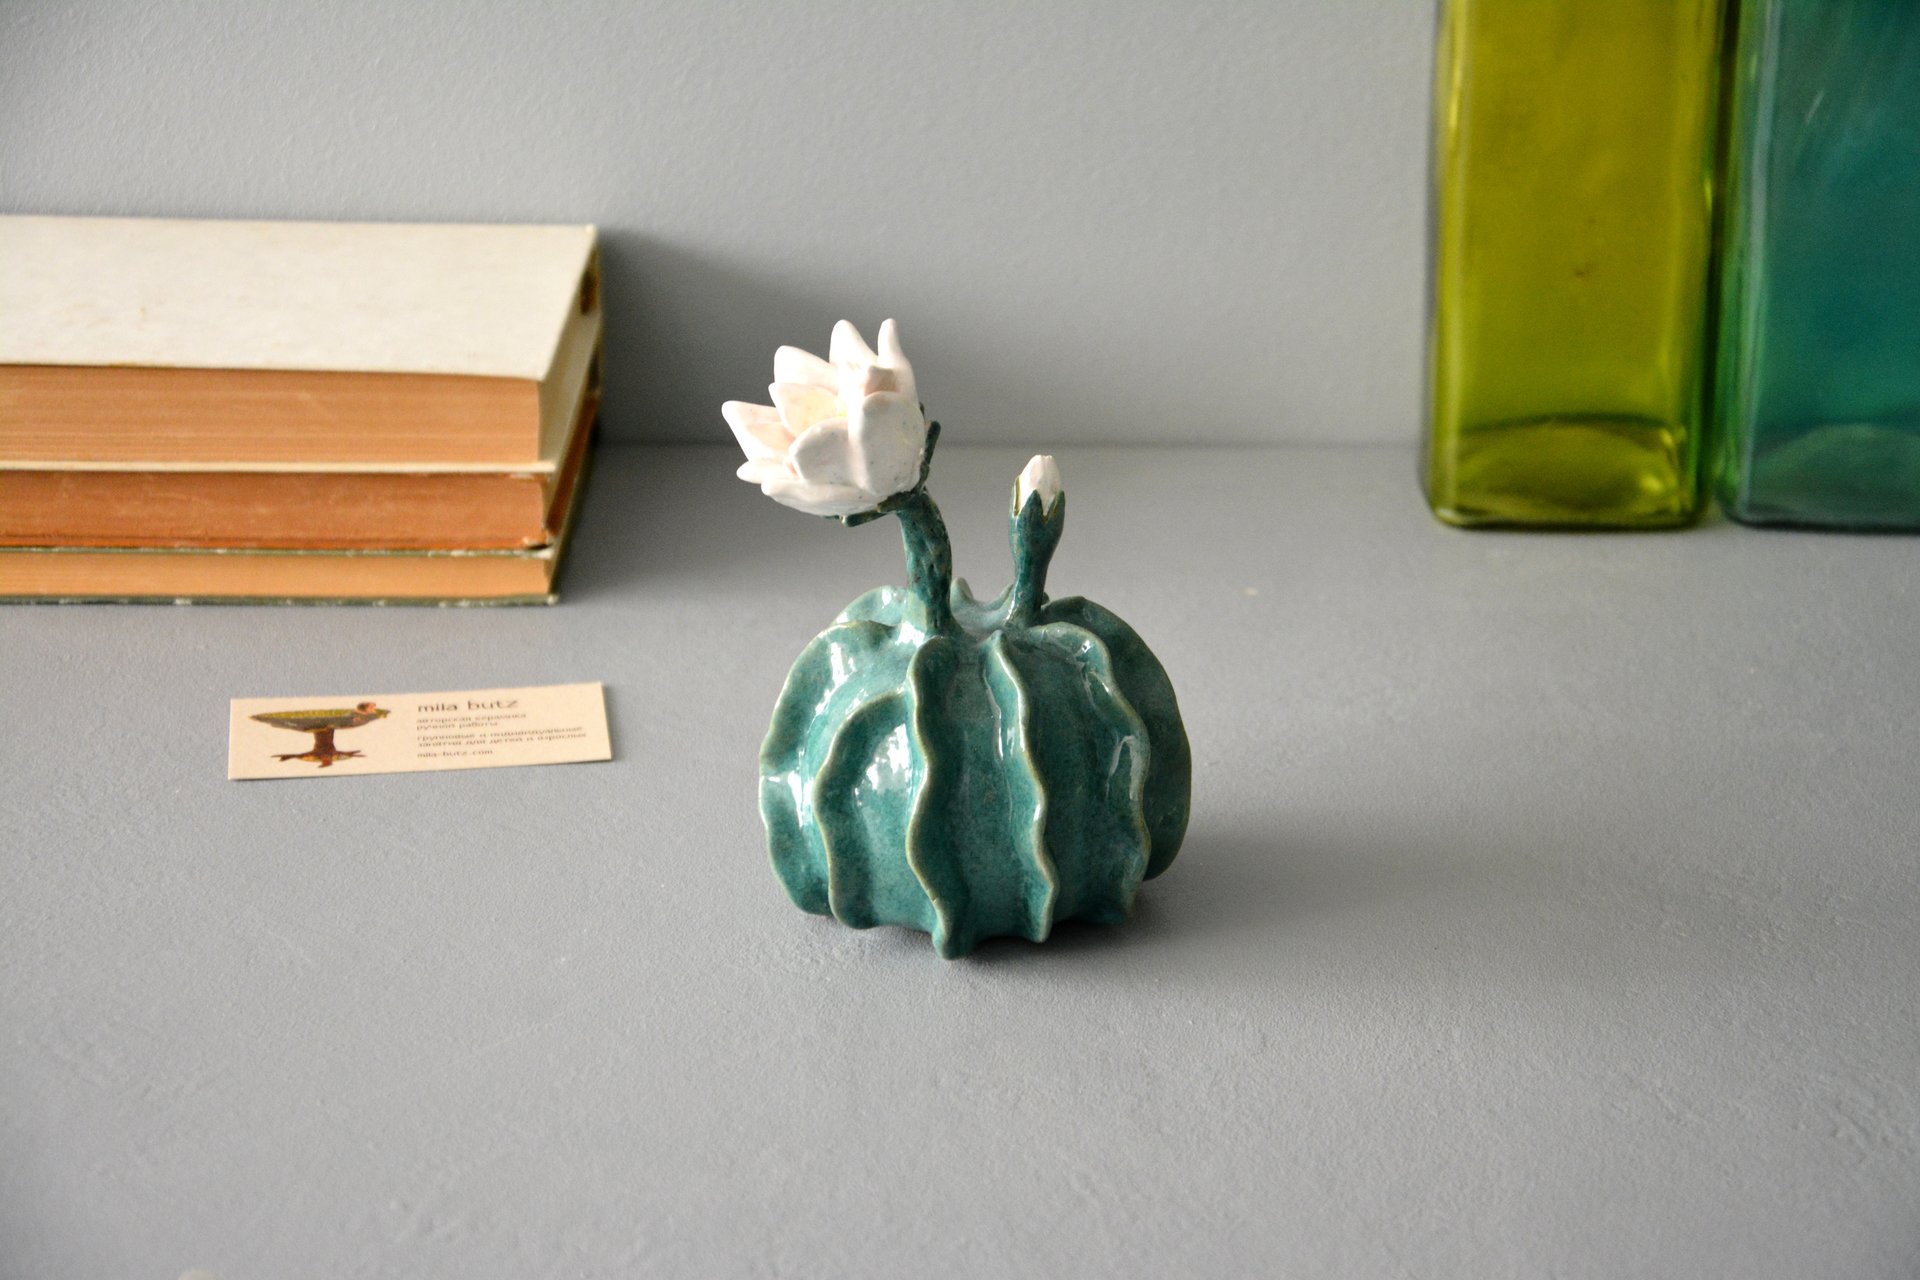 Ceramic Notocactus ottonis - Cactus ceramic, height - 12 cm, photo 3 of 6.